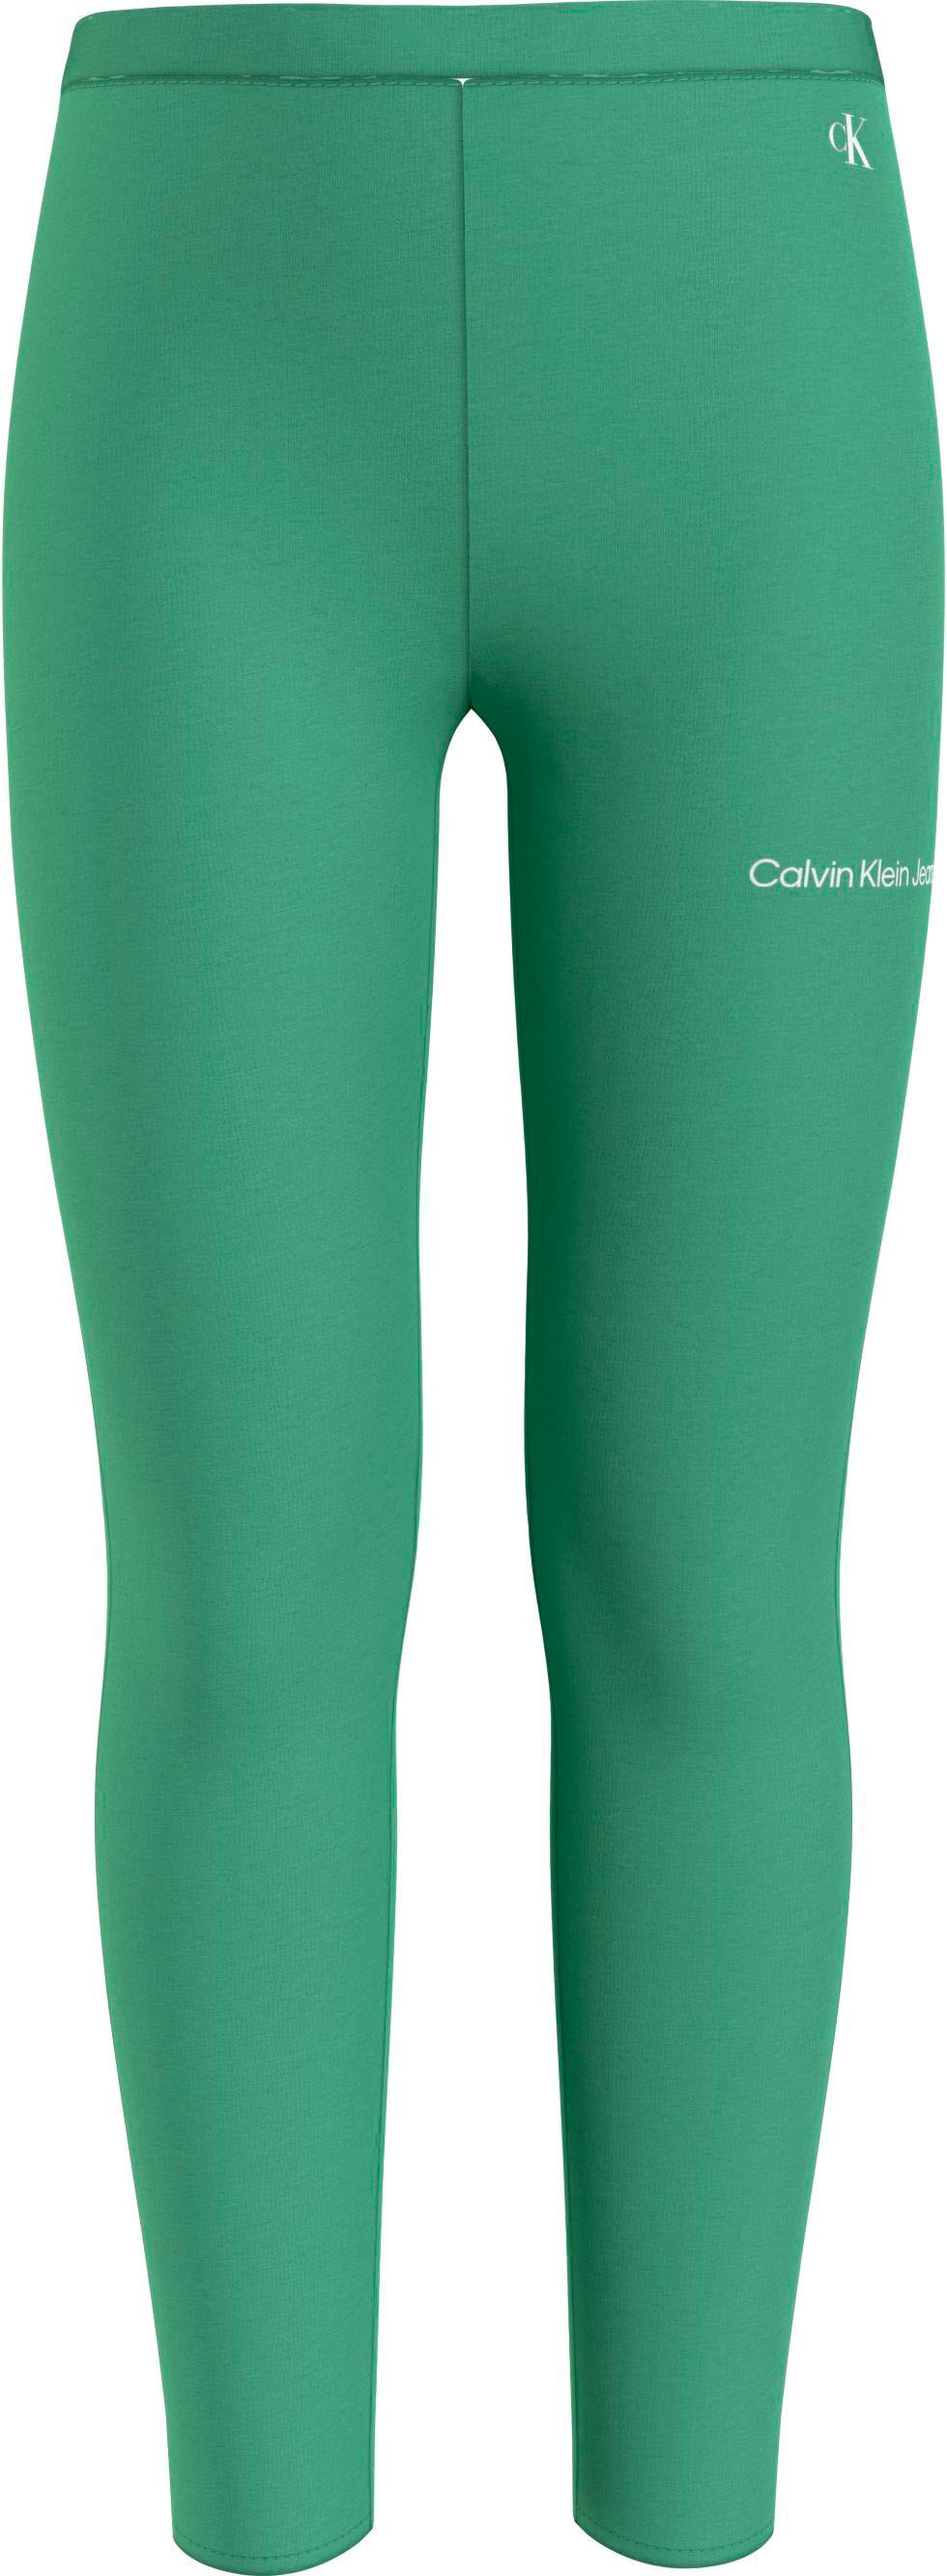 Calvin Klein Jeans Leggings, Kinder Kids Junior MiniMe,mit Calvin Klein  Logoschriftzug auf dem Bein bestellen bei OTTO